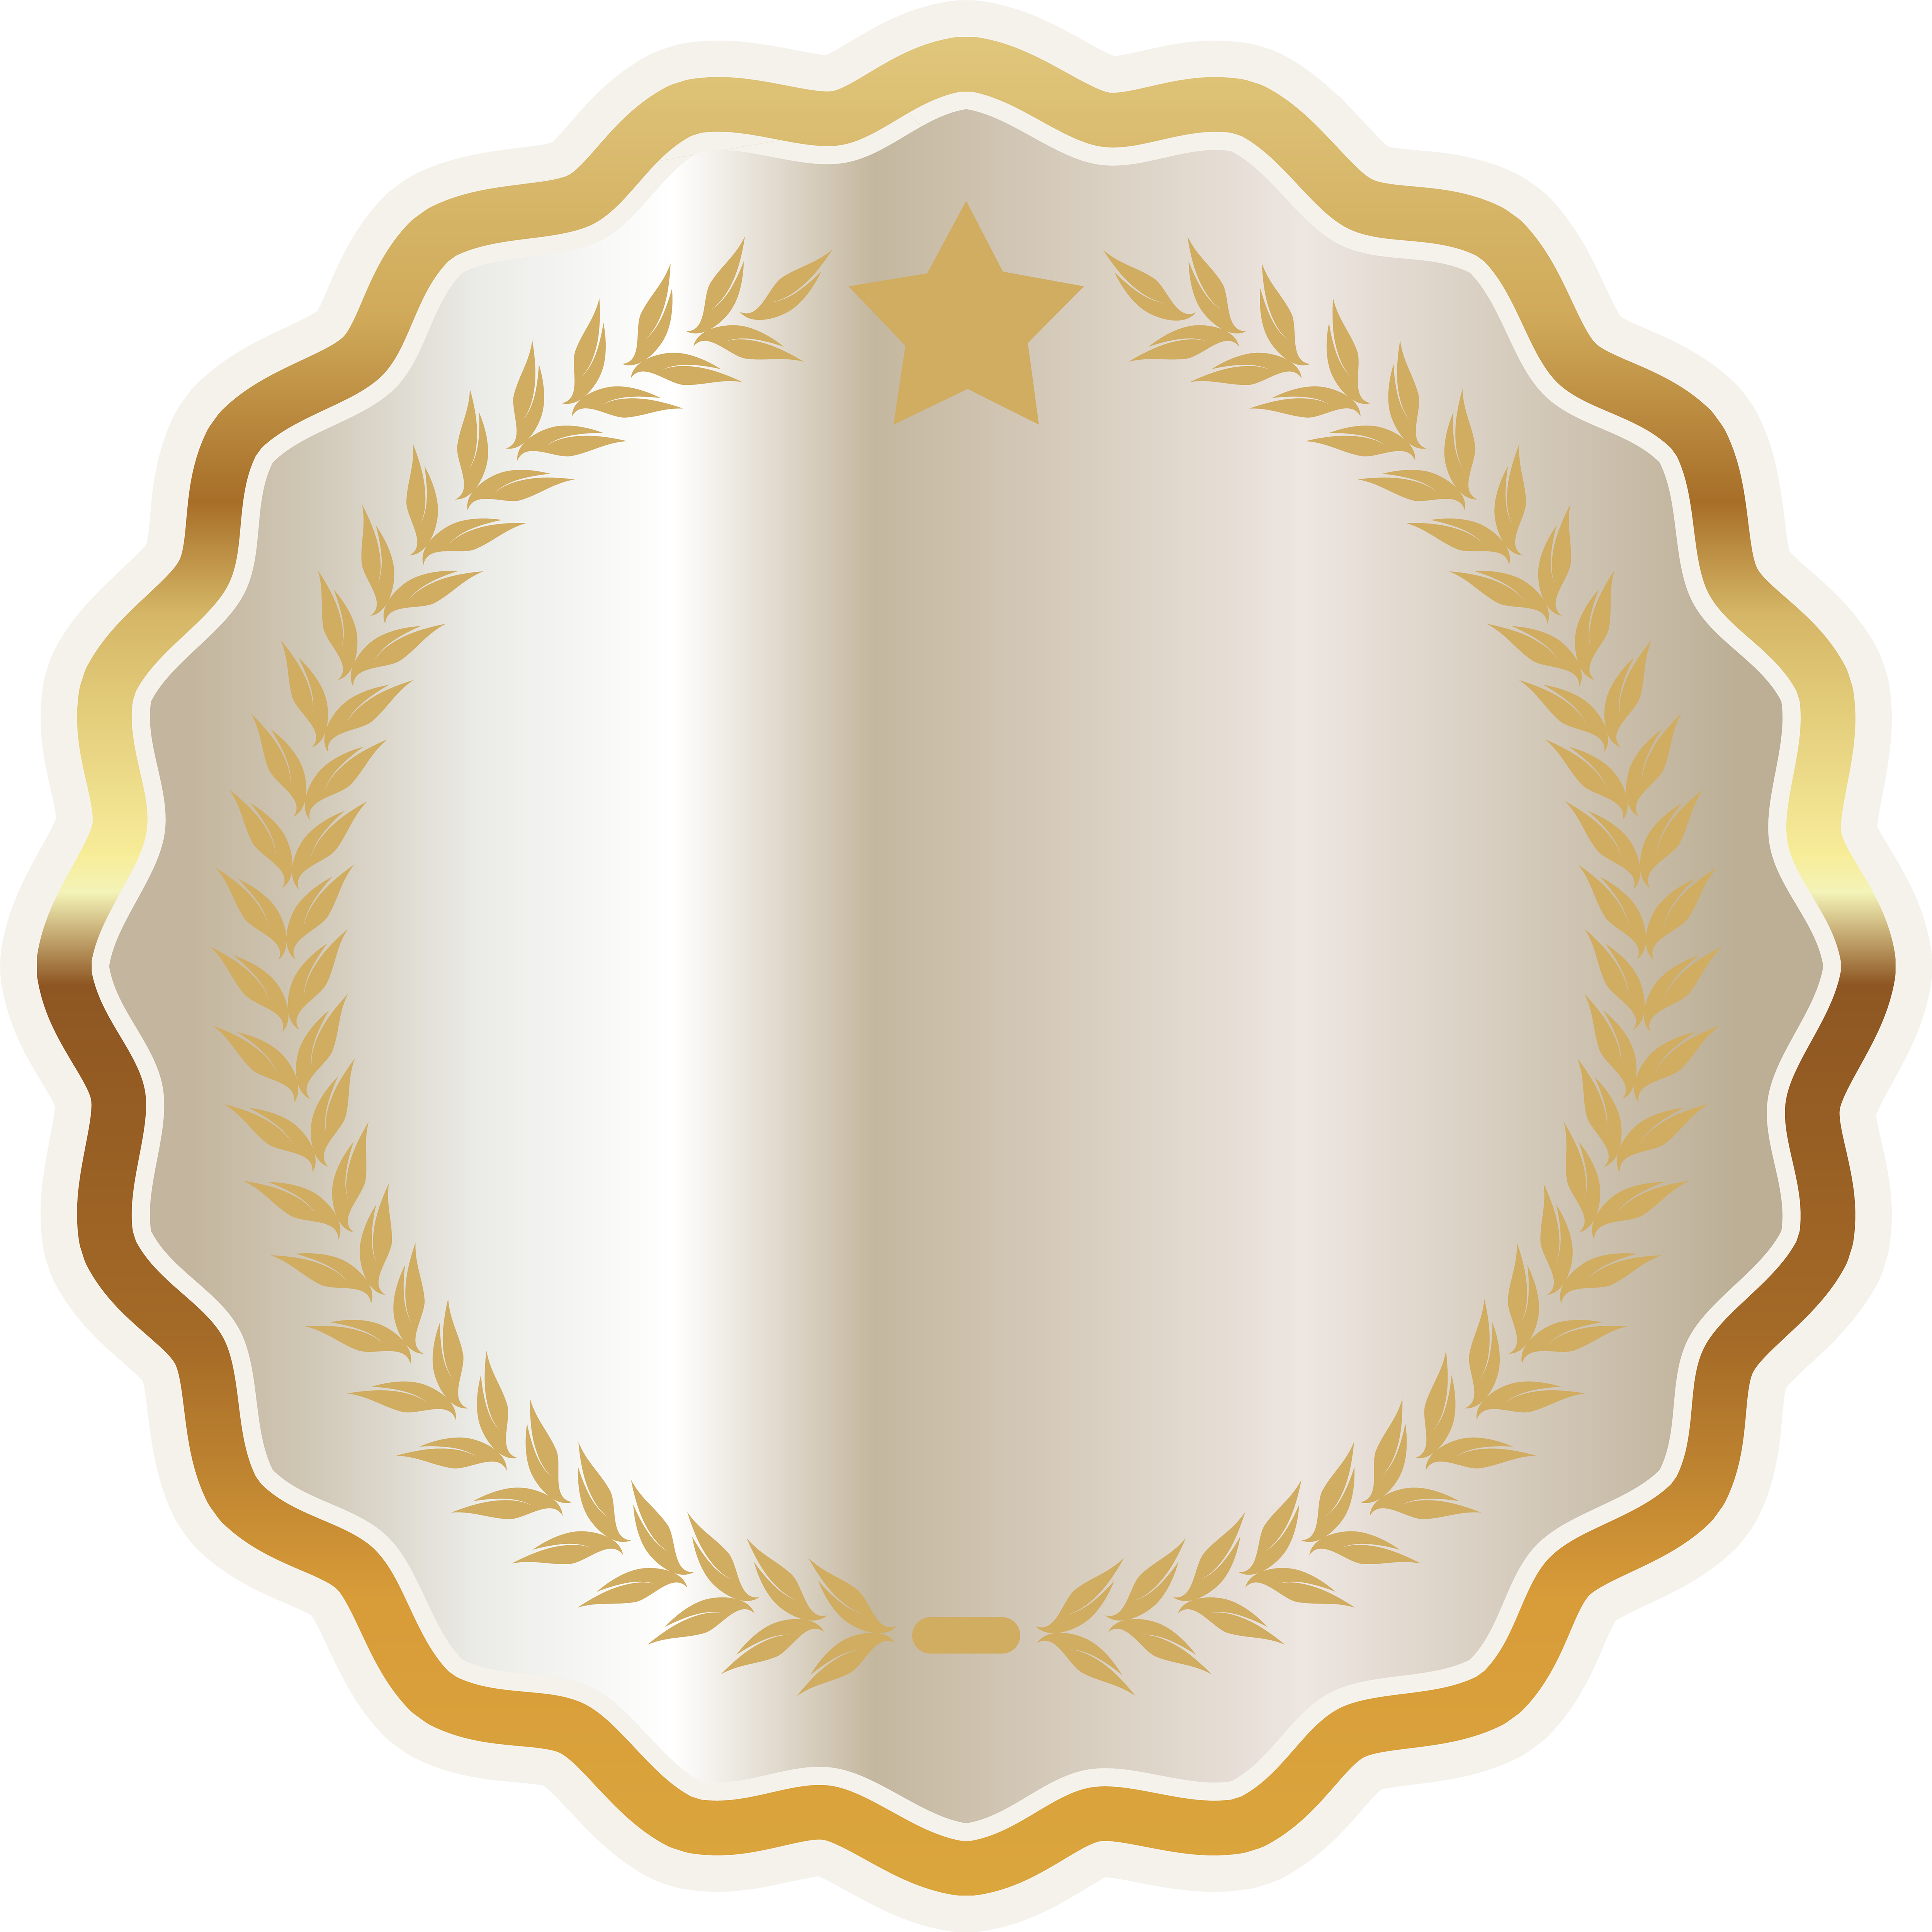 Elegant Gold Award Seal